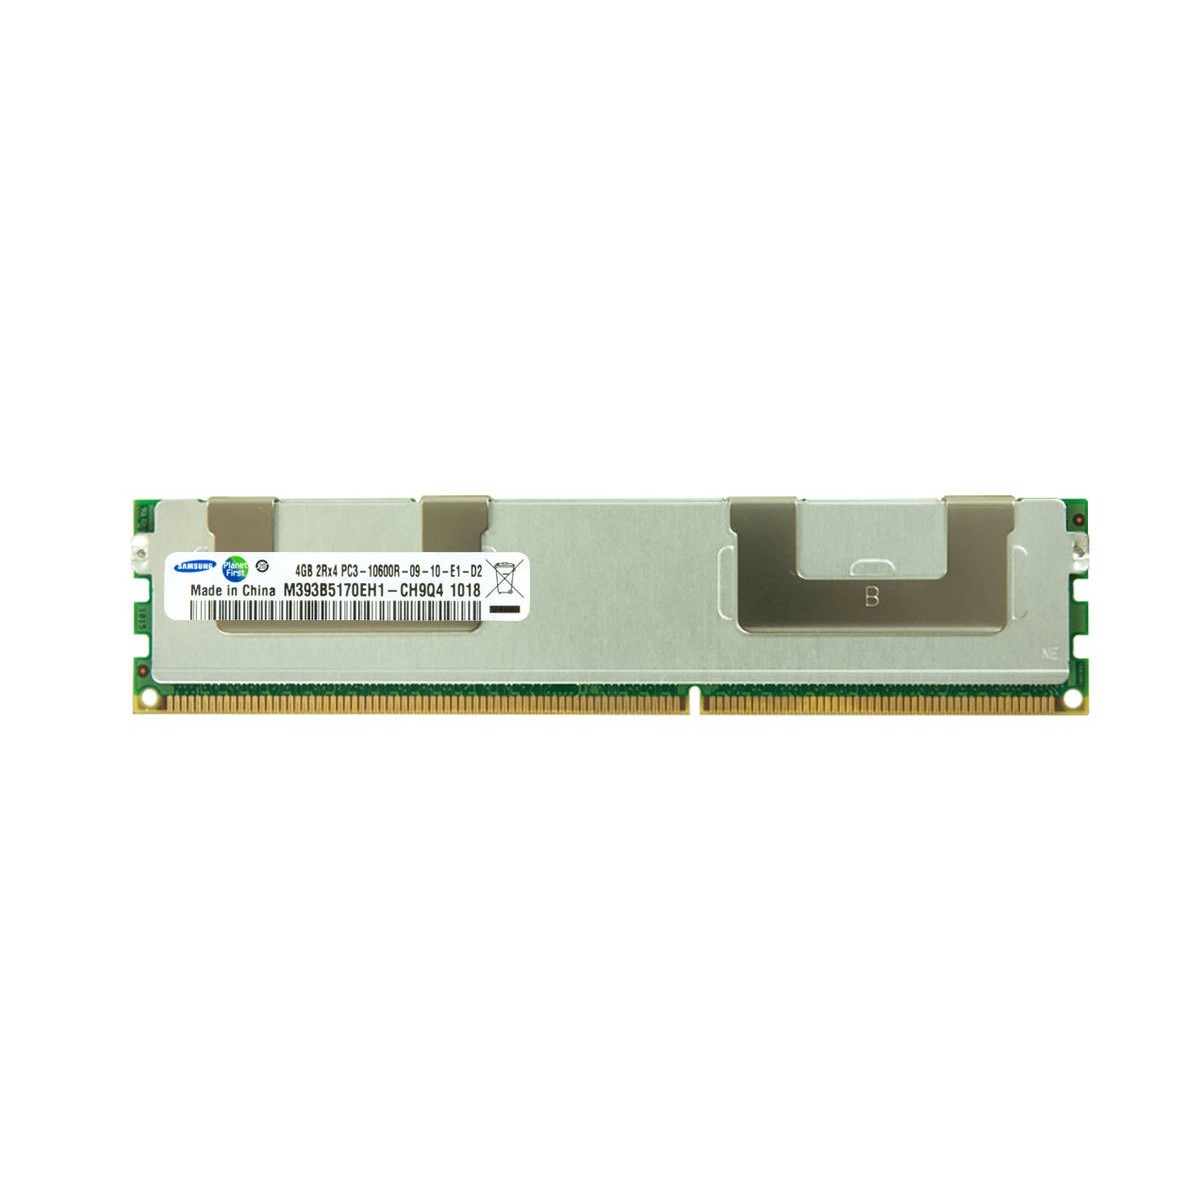 PAMIEC SAMSUNG 4GB DDR3 PC3-10600R M393B5170EH1-CH9